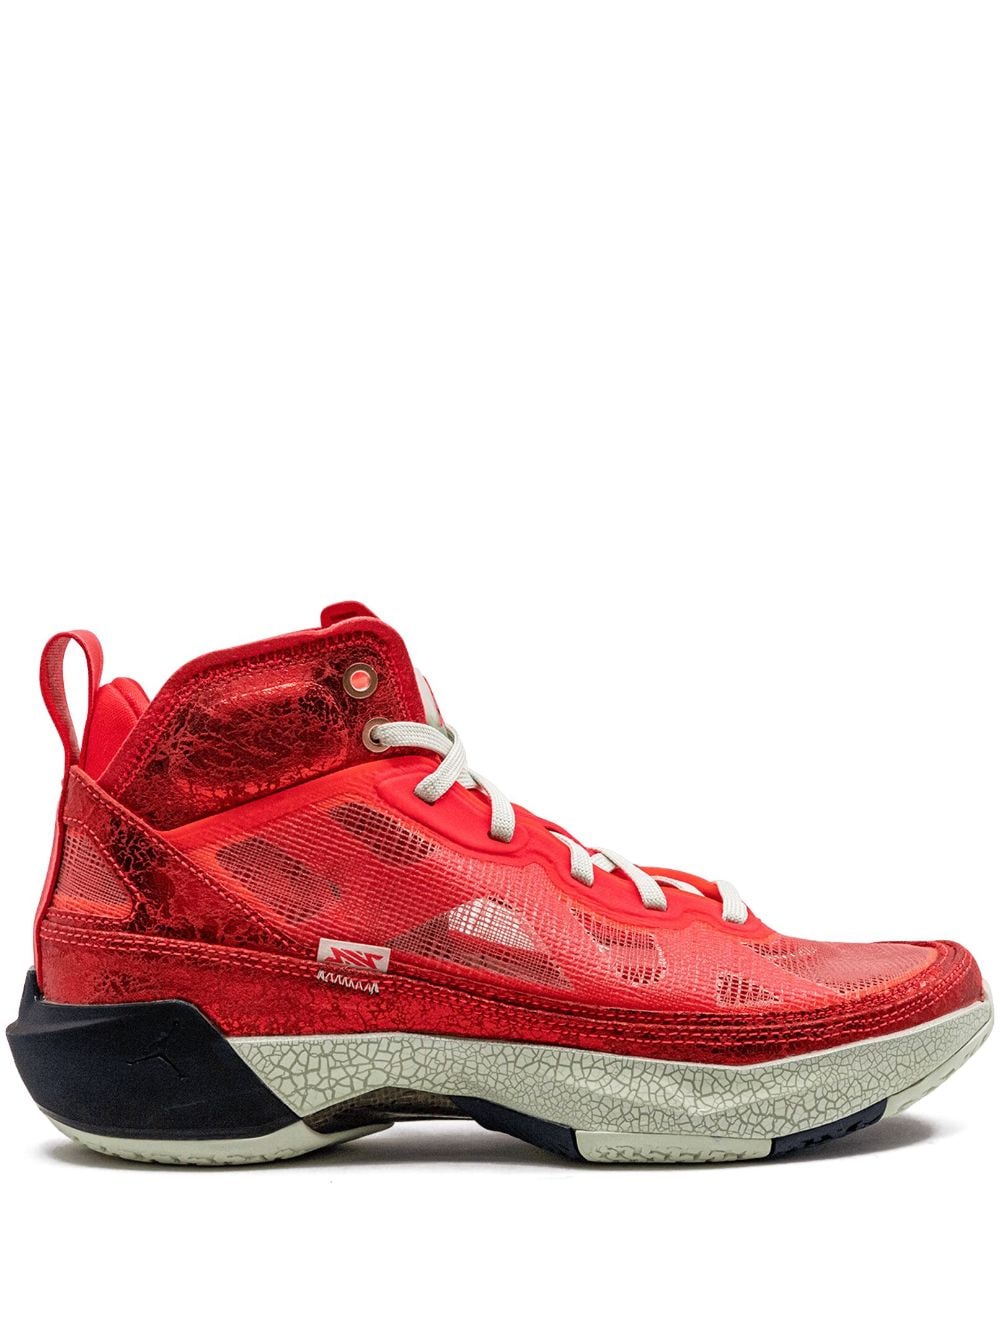 Jordan Jordan 37 high-top sneakers - Red